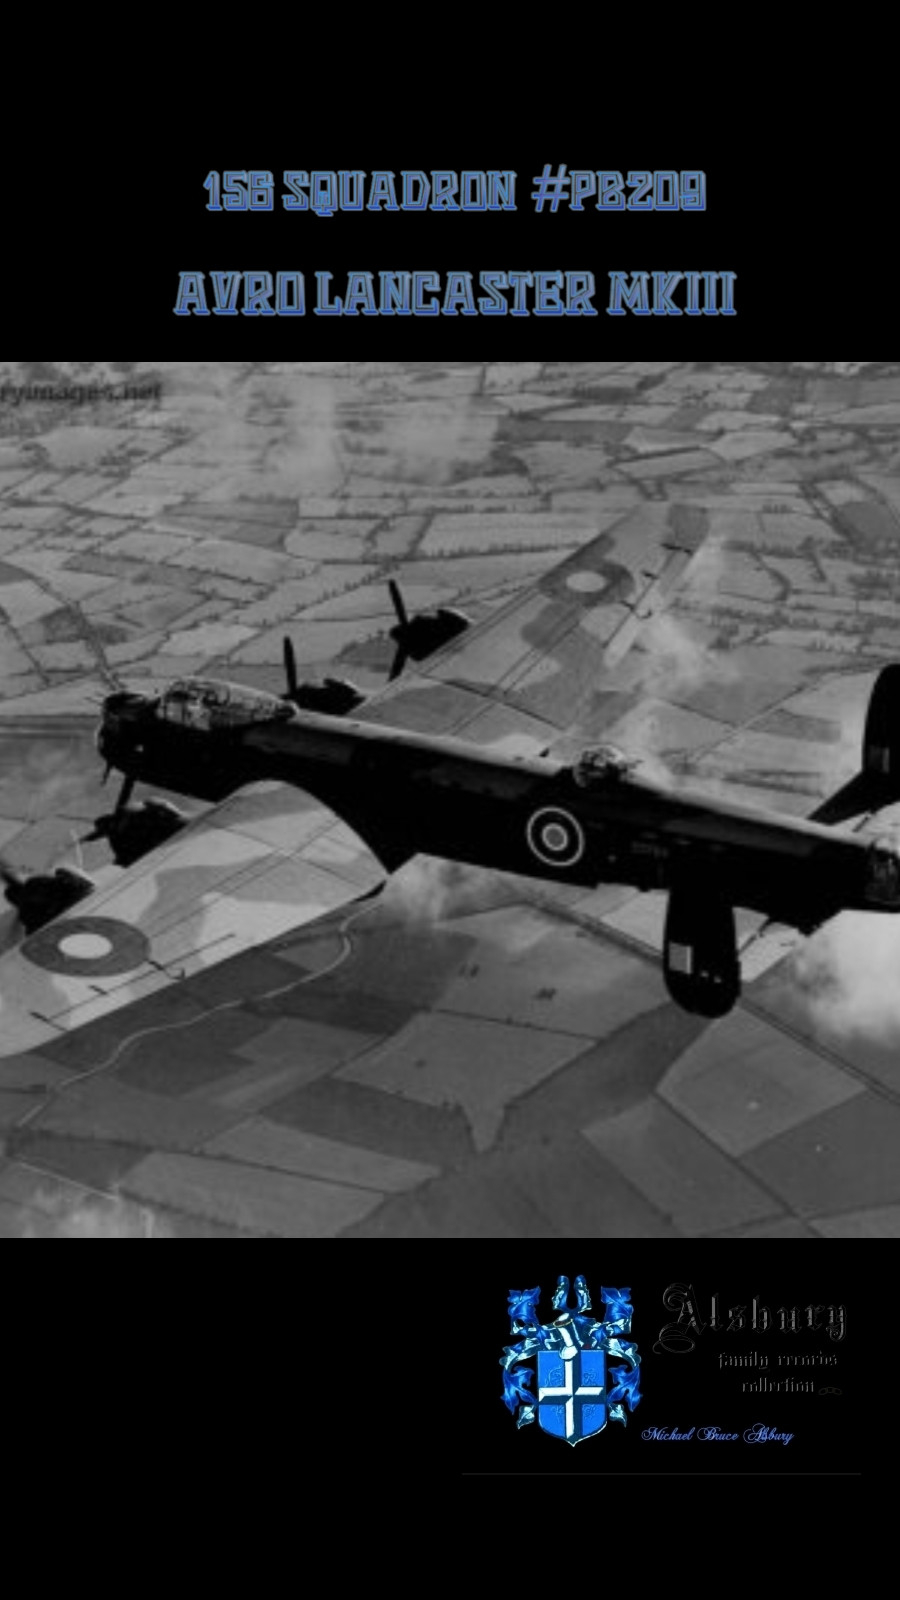 RAF 156 squadron, Avro Lancaster MKIII # PB209, W.T. "Bill" Alsbury